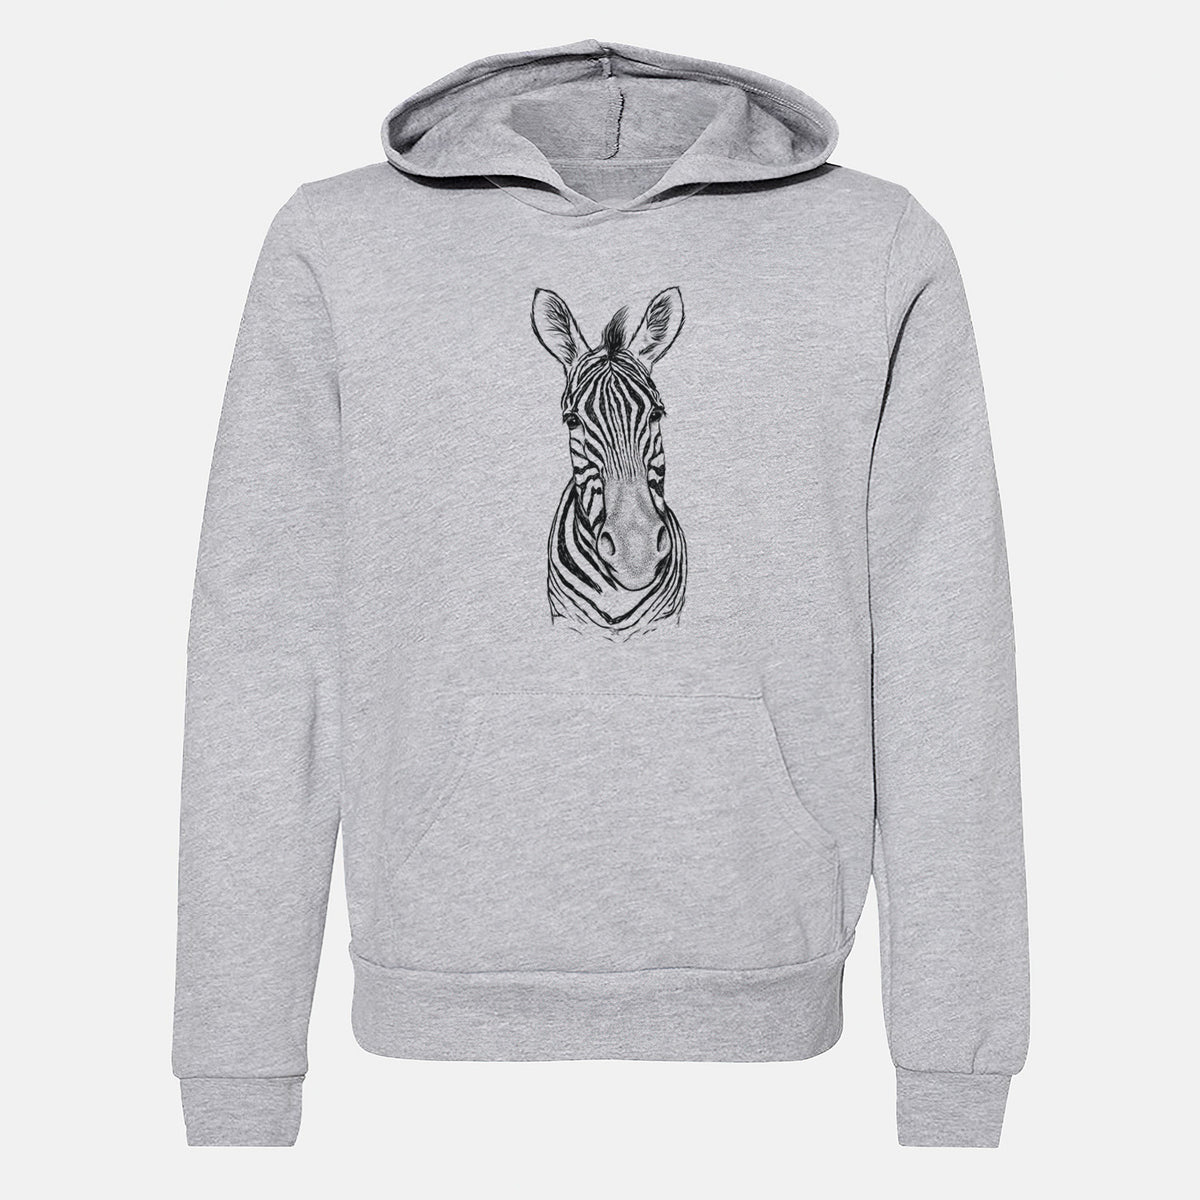 Damara Zebra - Equus quagga antiquorum - Youth Hoodie Sweatshirt